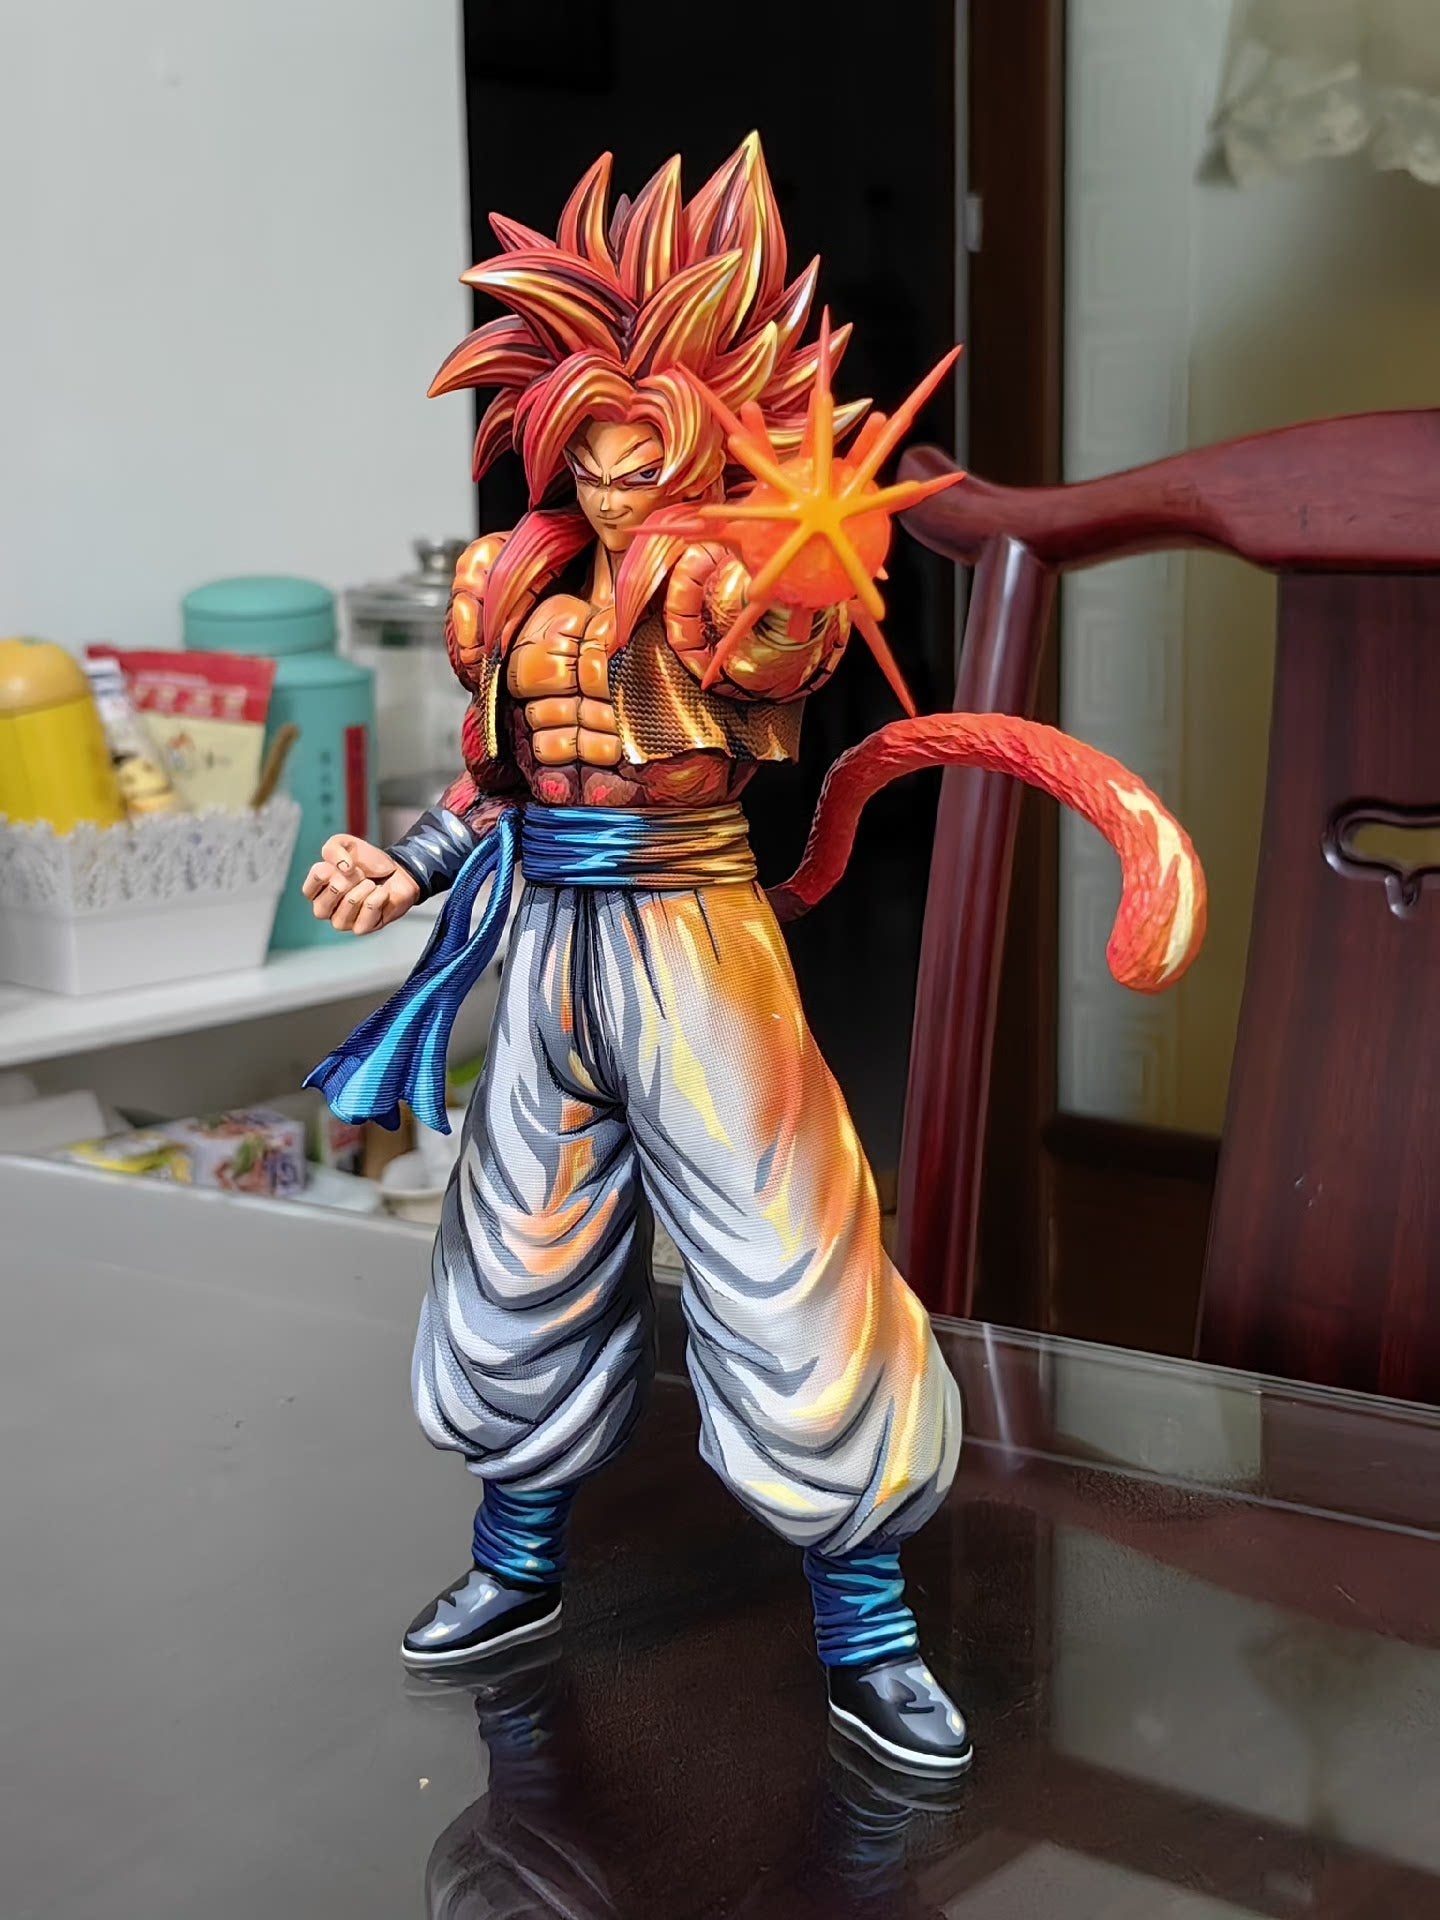 2d comic color dragonball figure repaint-ssj4 gogeta - Lyk Repaint